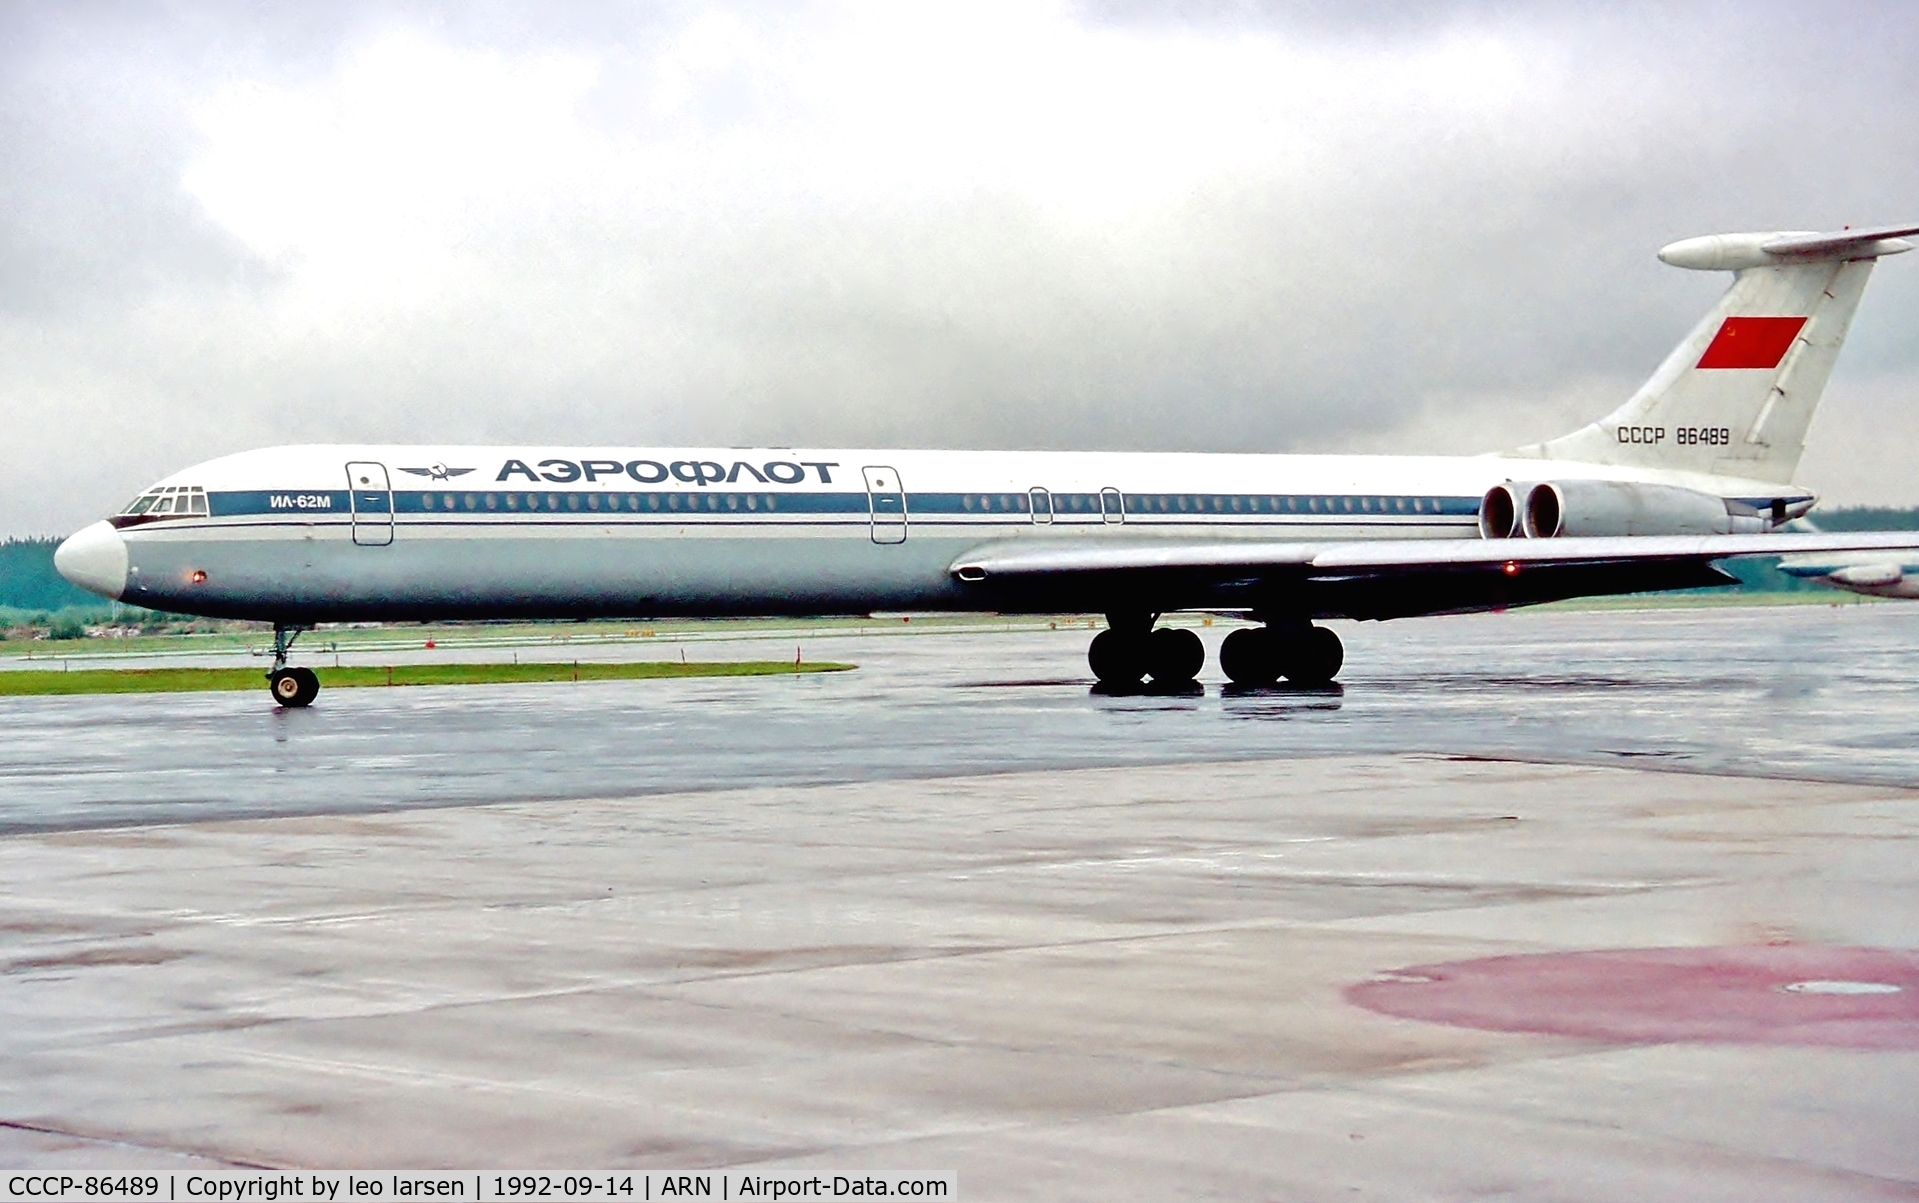 CCCP-86489, 1978 Ilyushin Il-62M C/N 4830456, Arlanda 14.9.1992